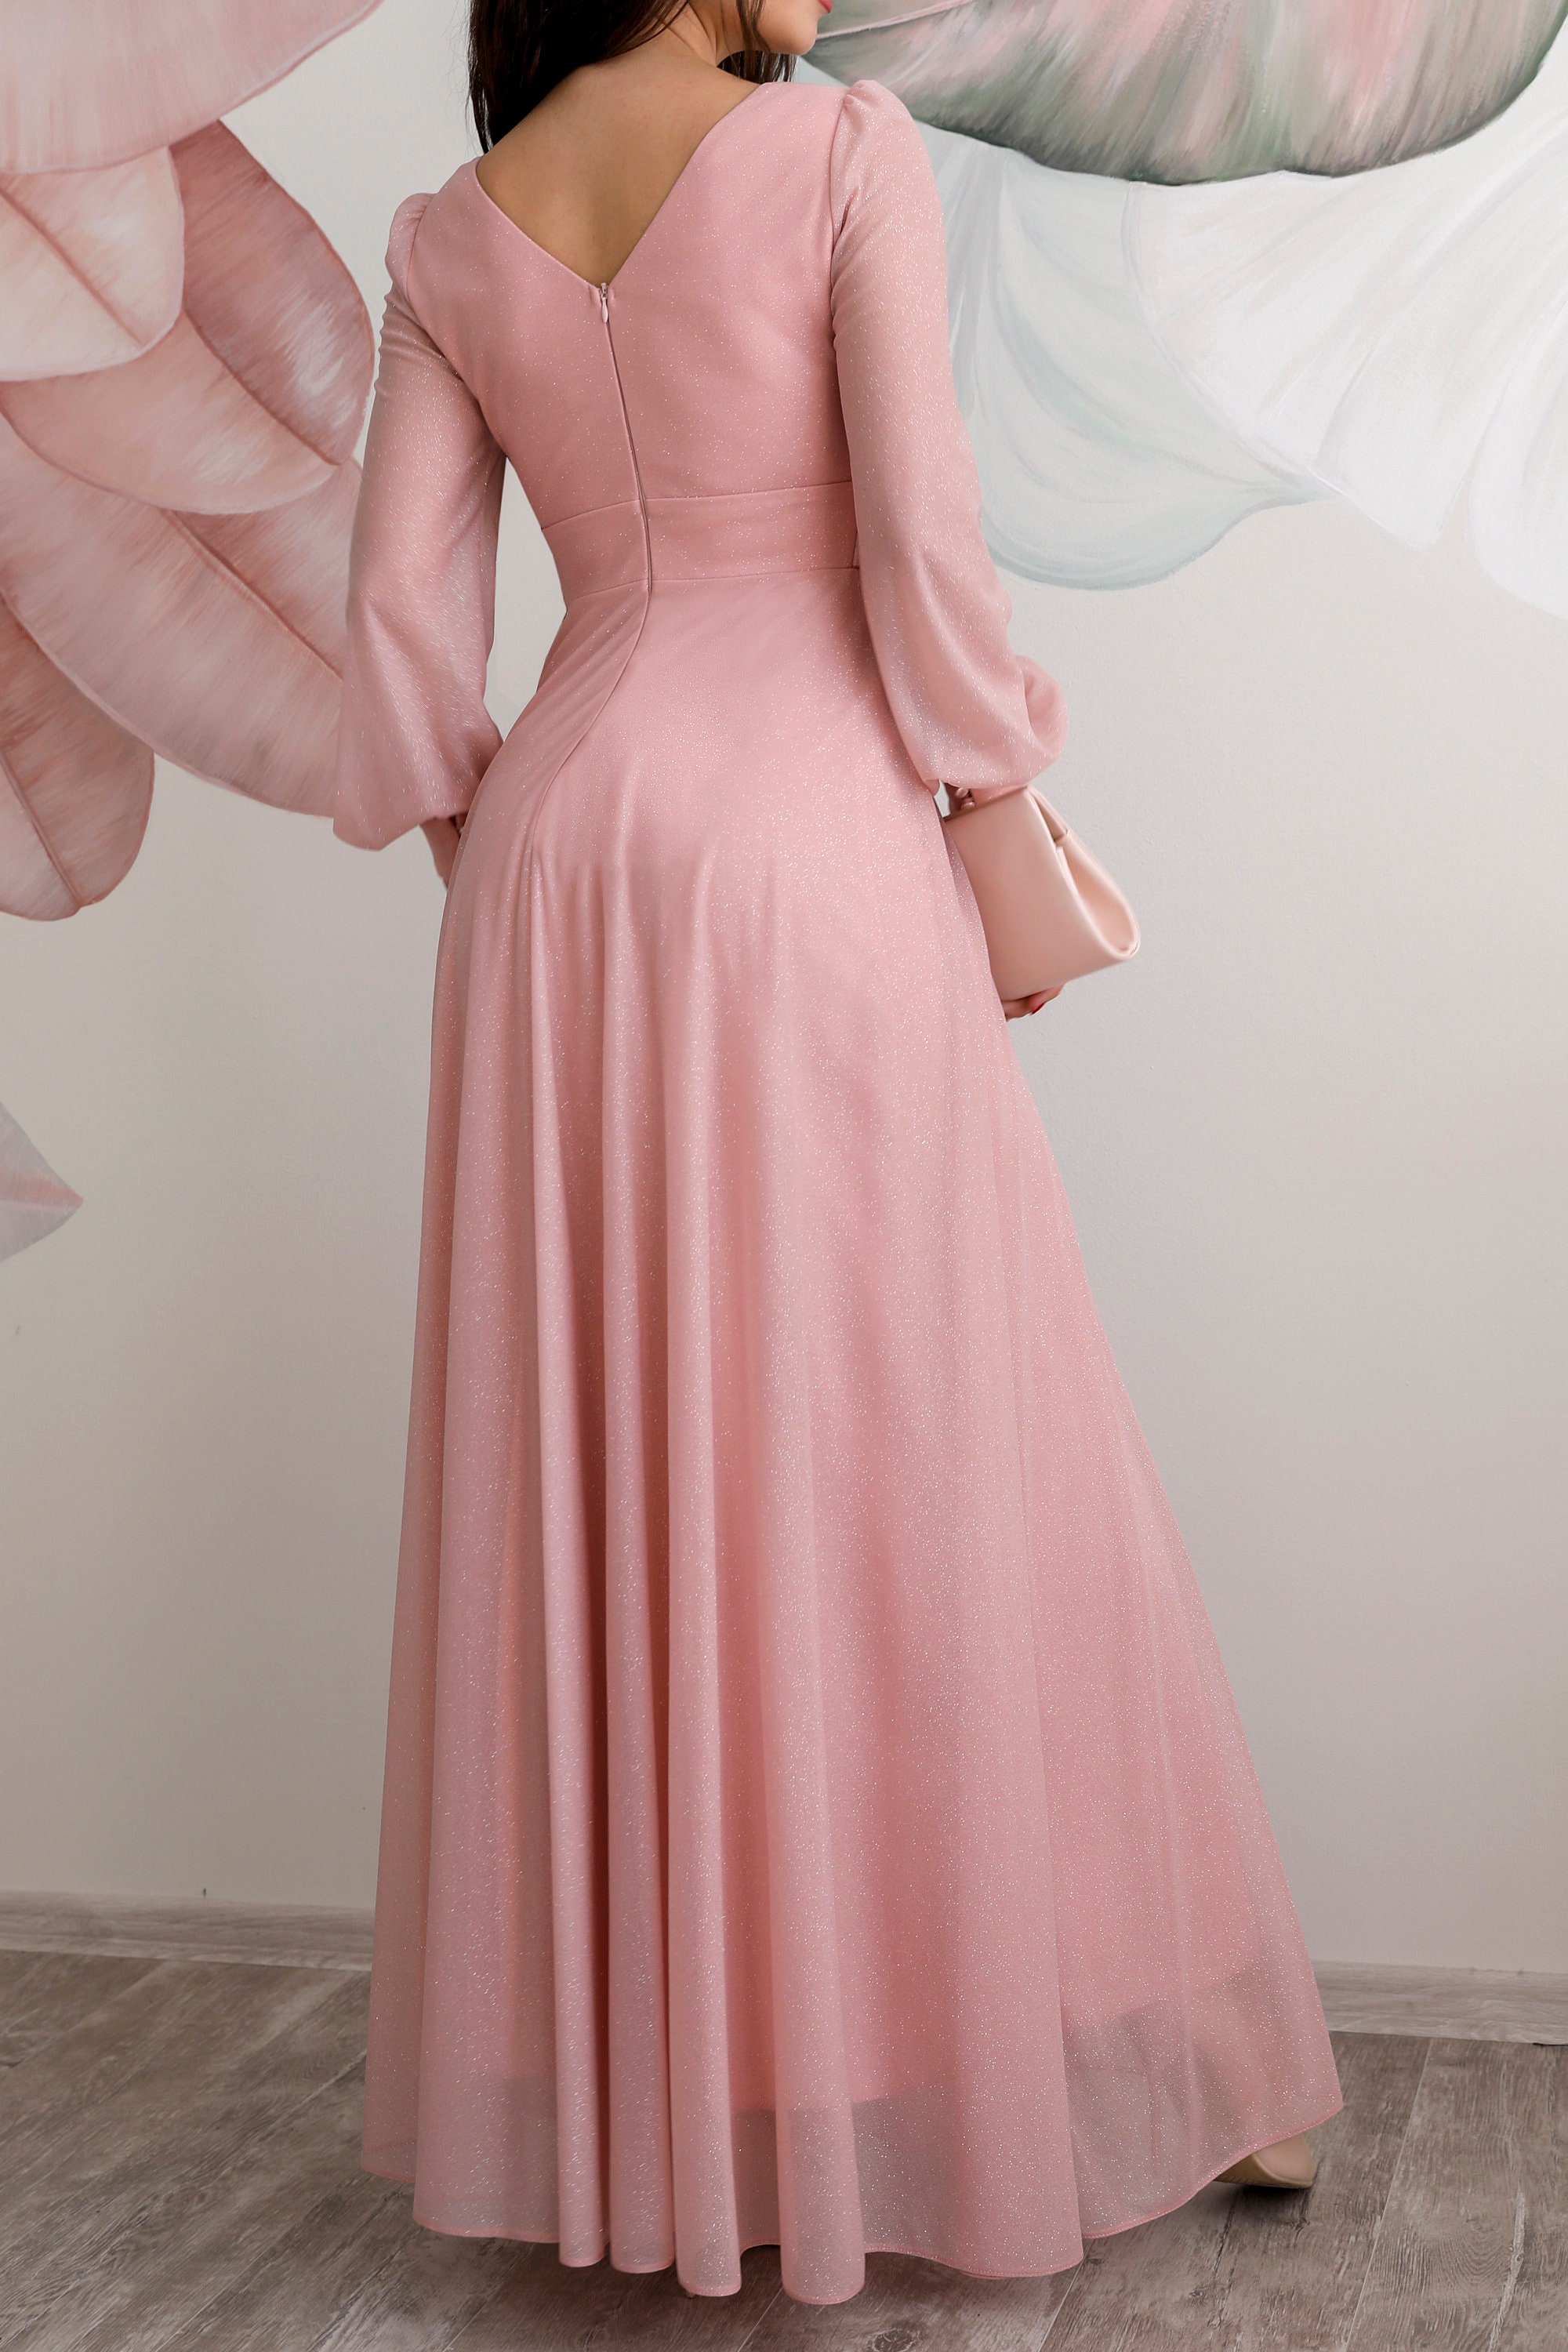 Pink Chiffon Bridesmaid Maxi Dress | Etsy